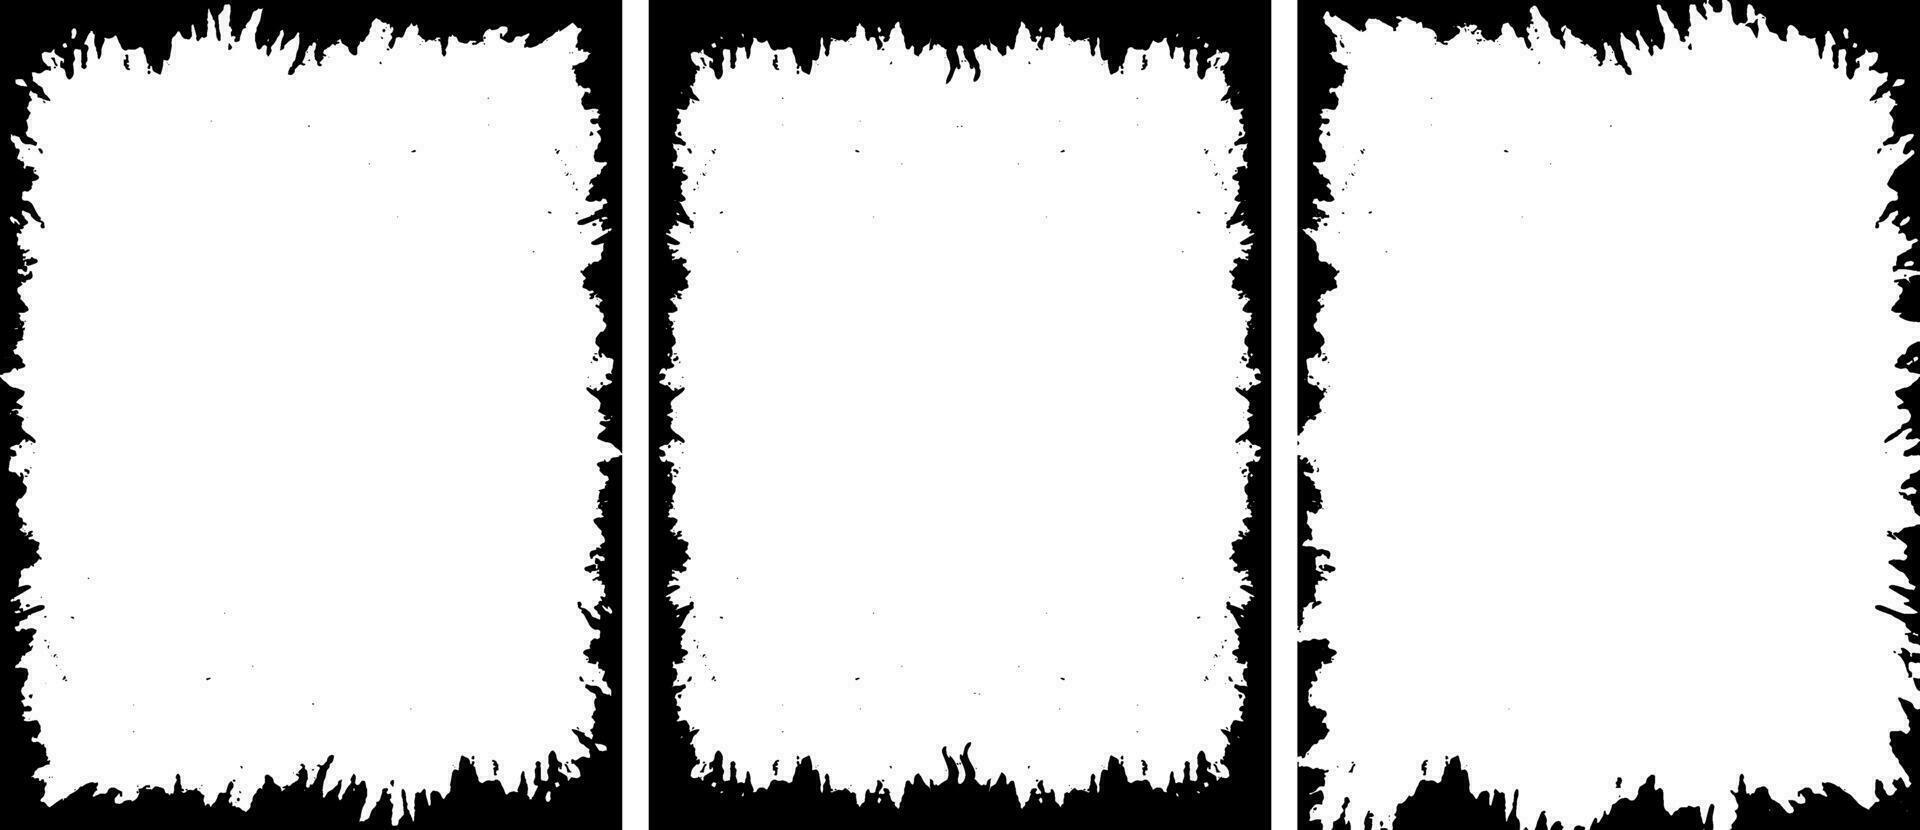 Tres vertical pancartas con blanco pintar en ellos Clásico marco frontera manojo, frontera marcos marco frontera grunge bandera rectangular angustia textura vertical frontera modelo marcos negro marco vector